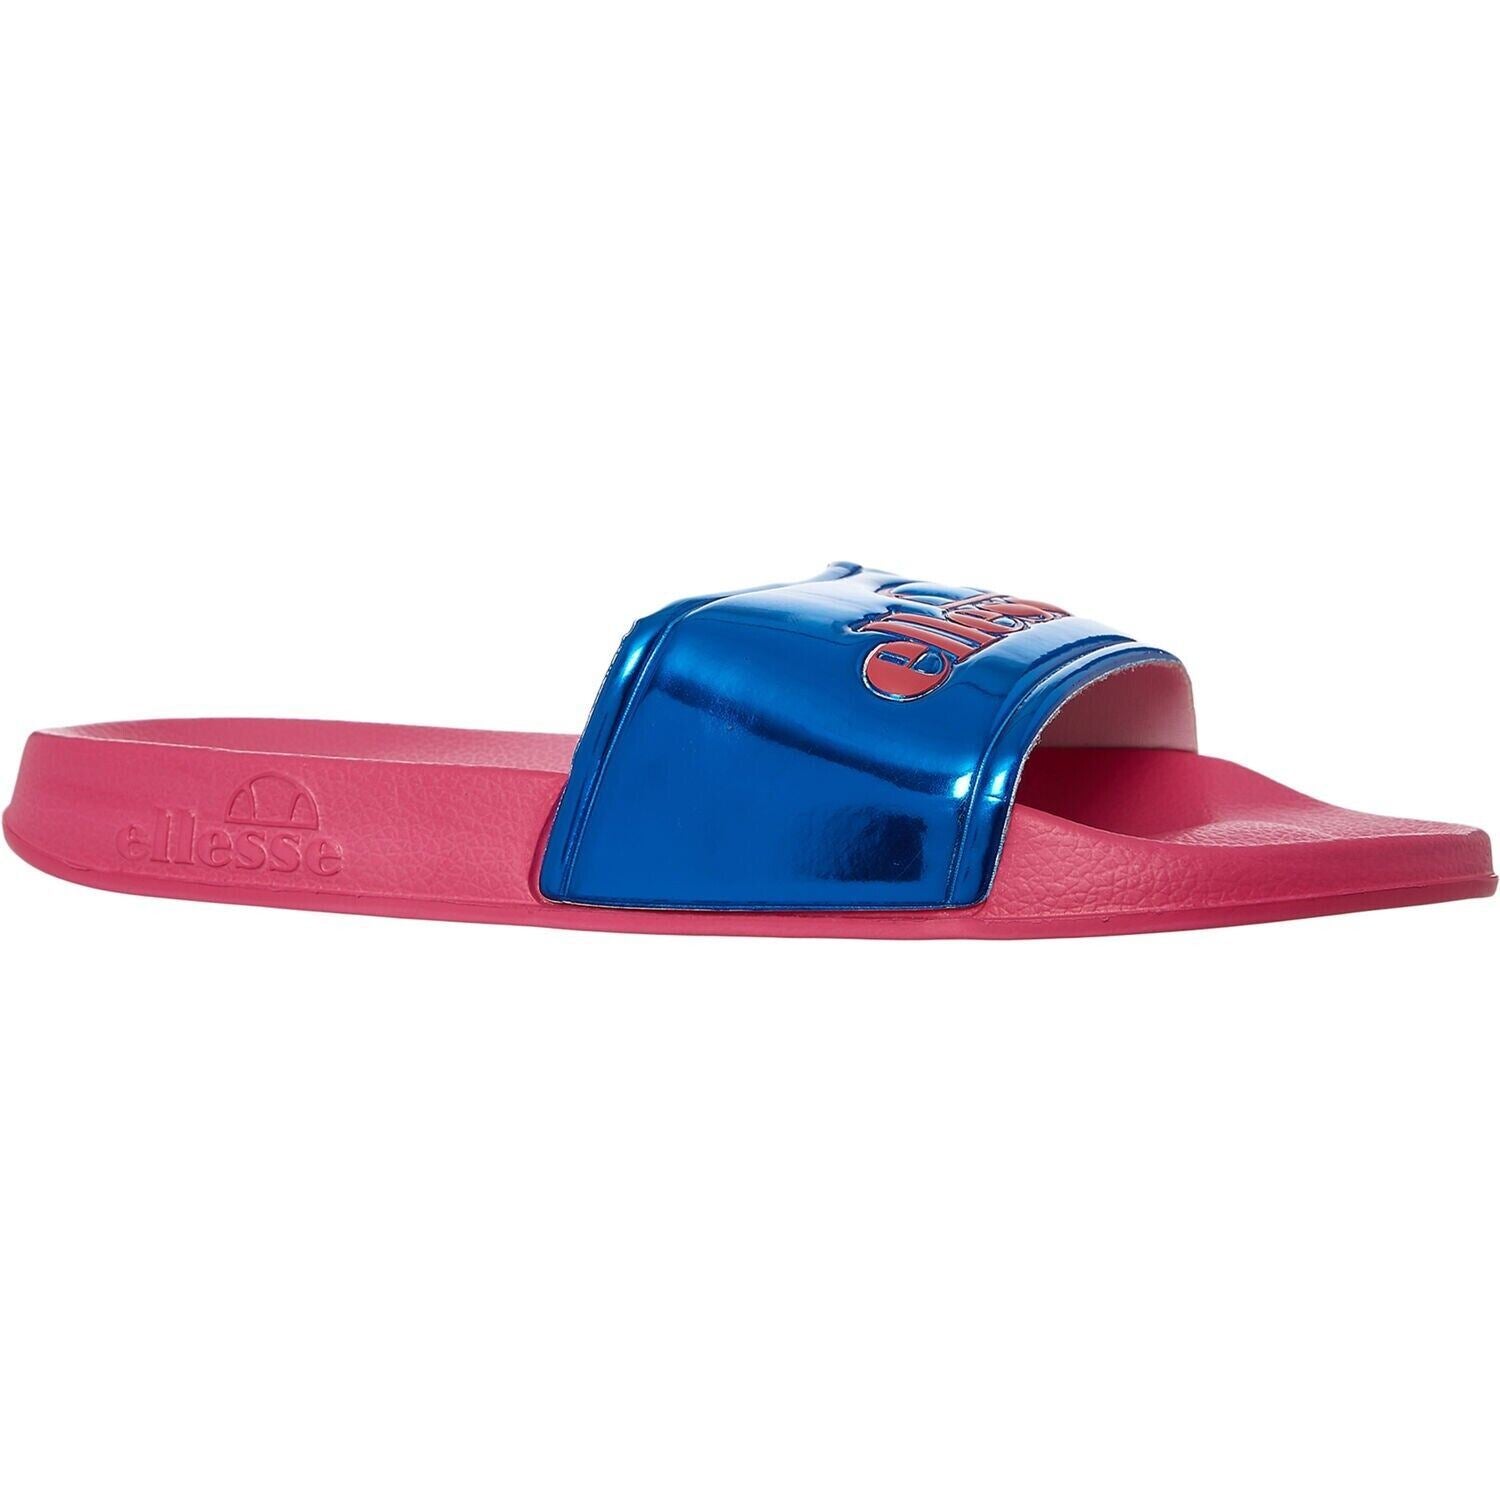 ELLESSE - GISELLE Women's Logo Sliders, Sandals, Pink/Blue, size UK 4 / EU 37